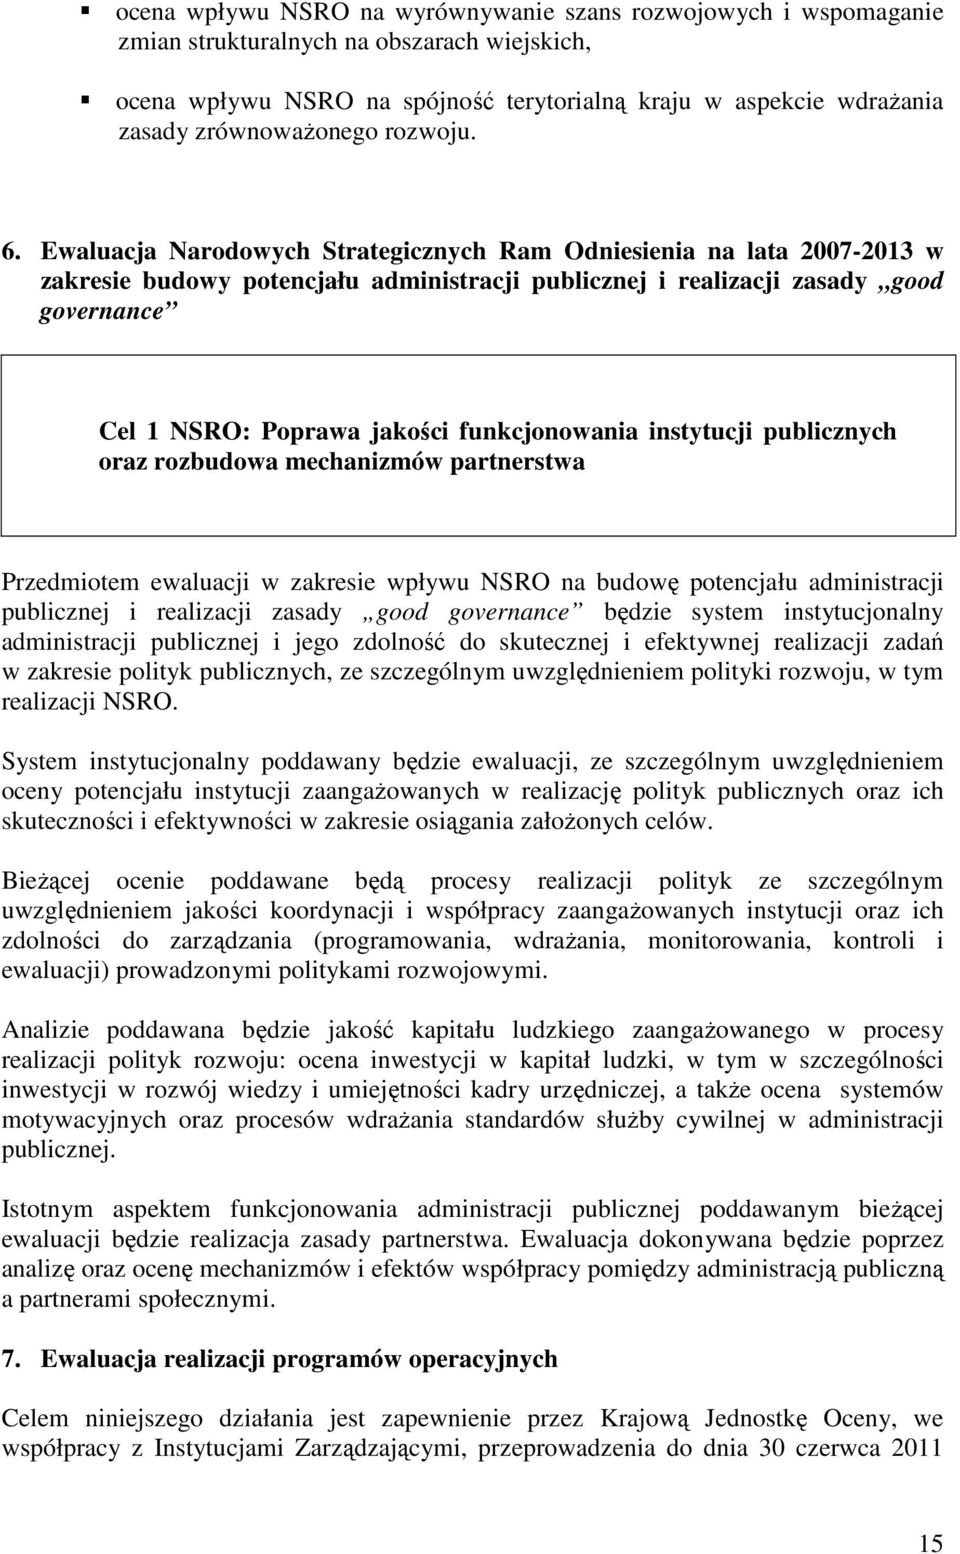 Ewaluacja Narodowych Strategicznych Ram Odniesienia na lata 2007-2013 w zakresie budowy potencjału administracji publicznej i realizacji zasady good governance Cel 1 NSRO: Poprawa jakości